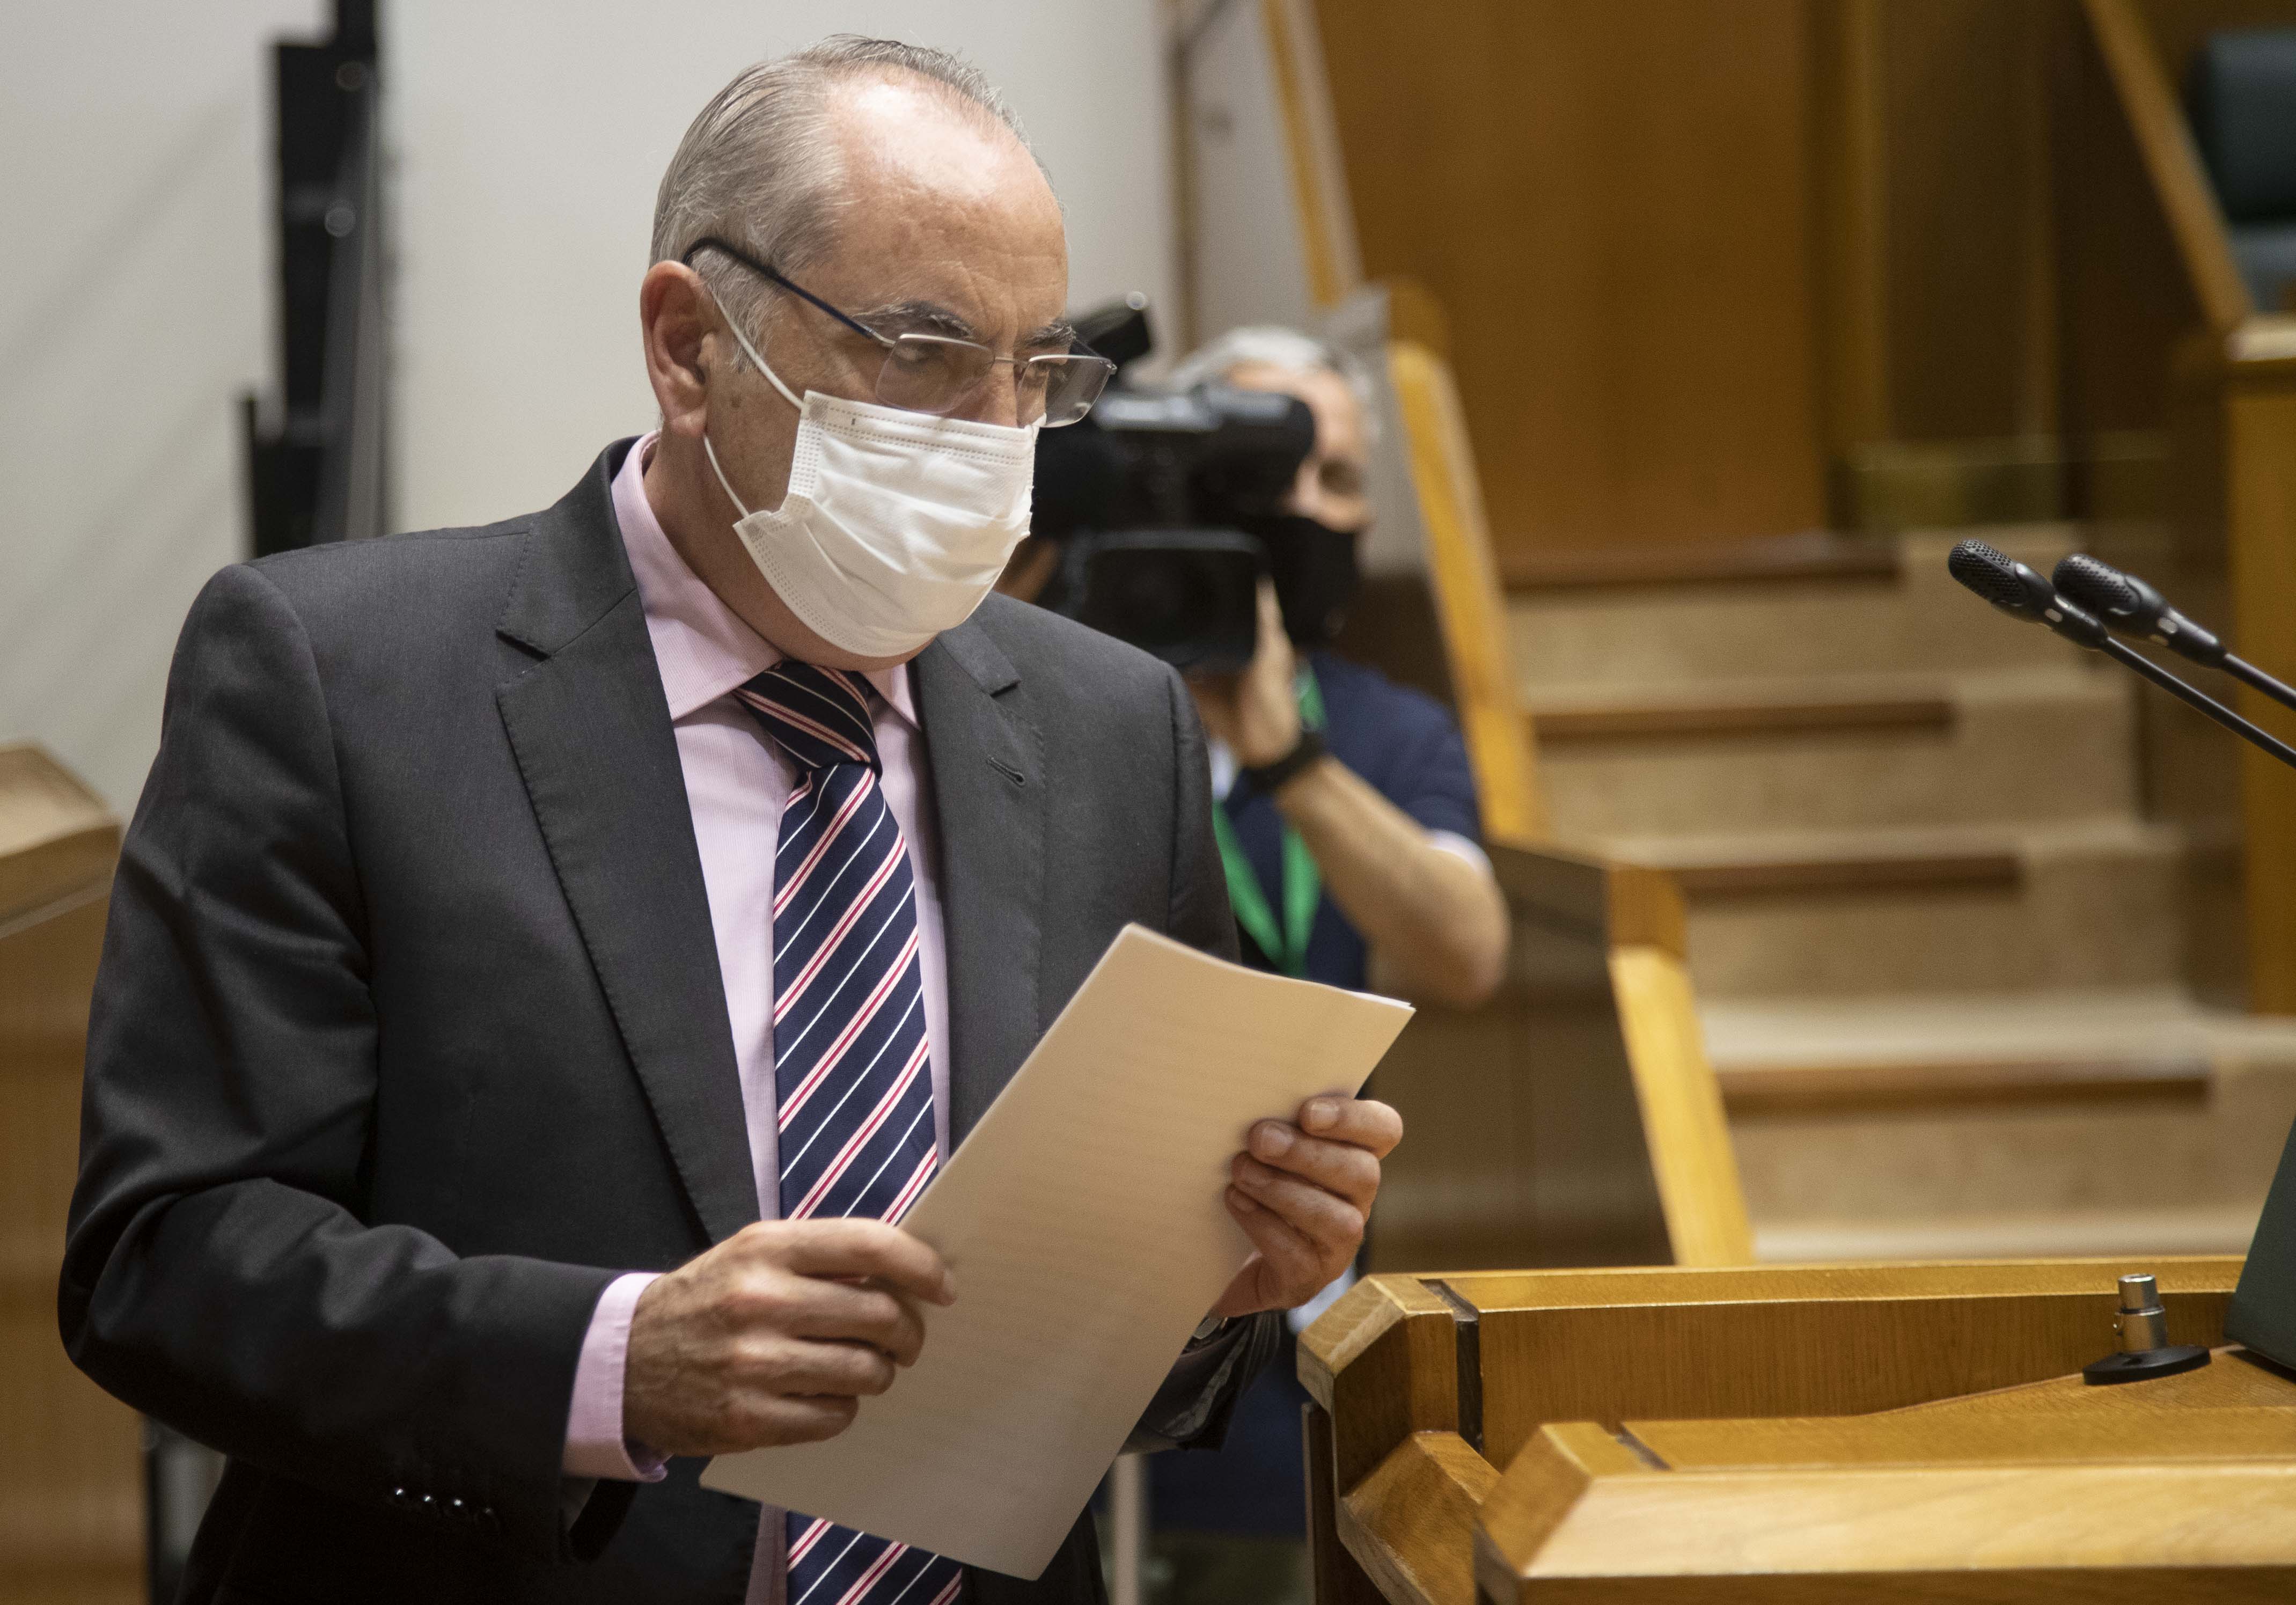 El Consejero Iñaki Arriola interviene en el Parlamento Vasco | Foto: Parlamento Vasco